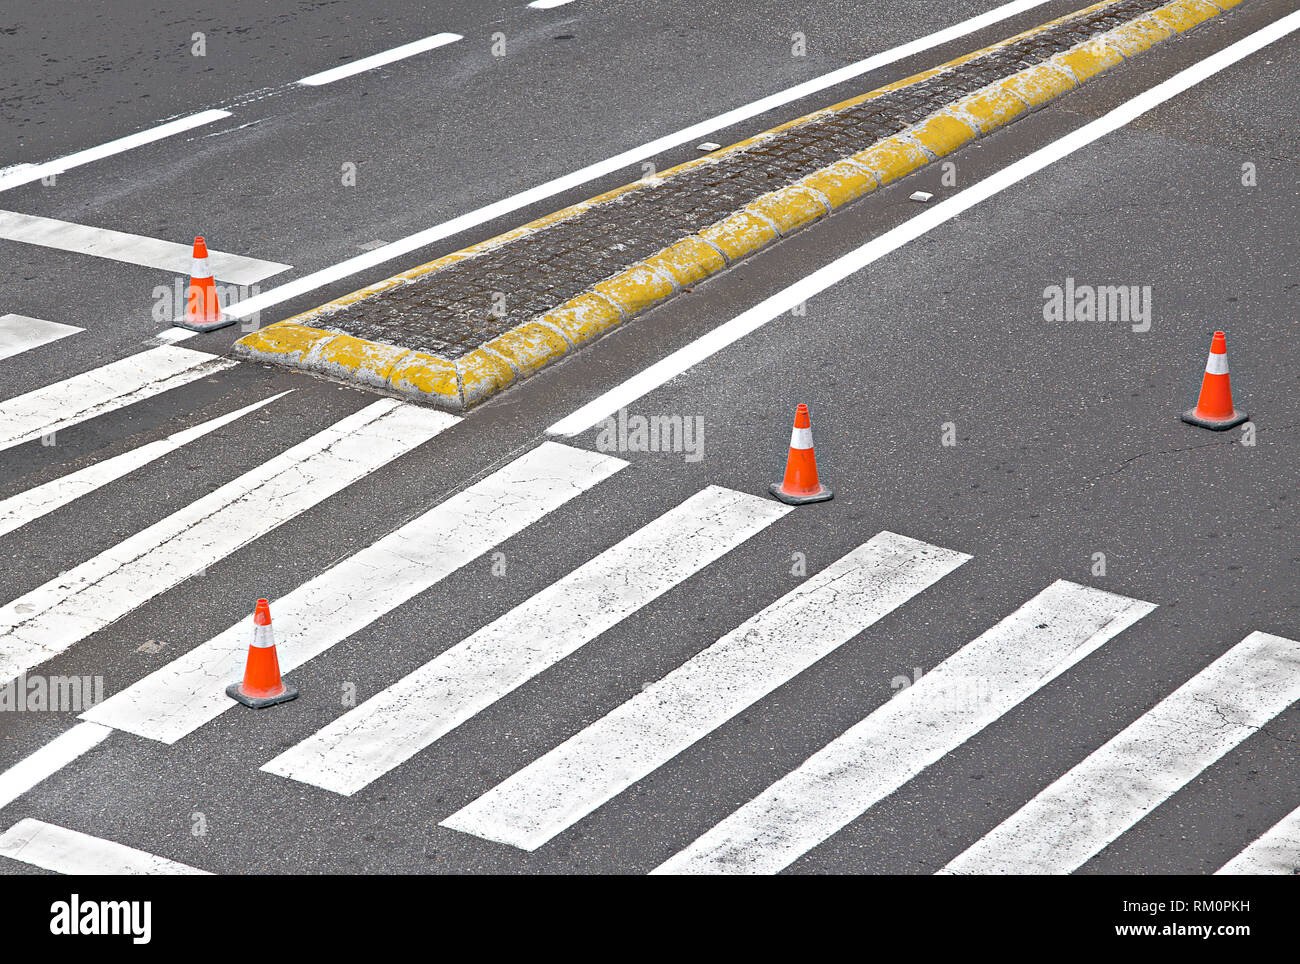 Route juste peint avec des lignes blanches, de concordance et cônes orange à rayures Banque D'Images